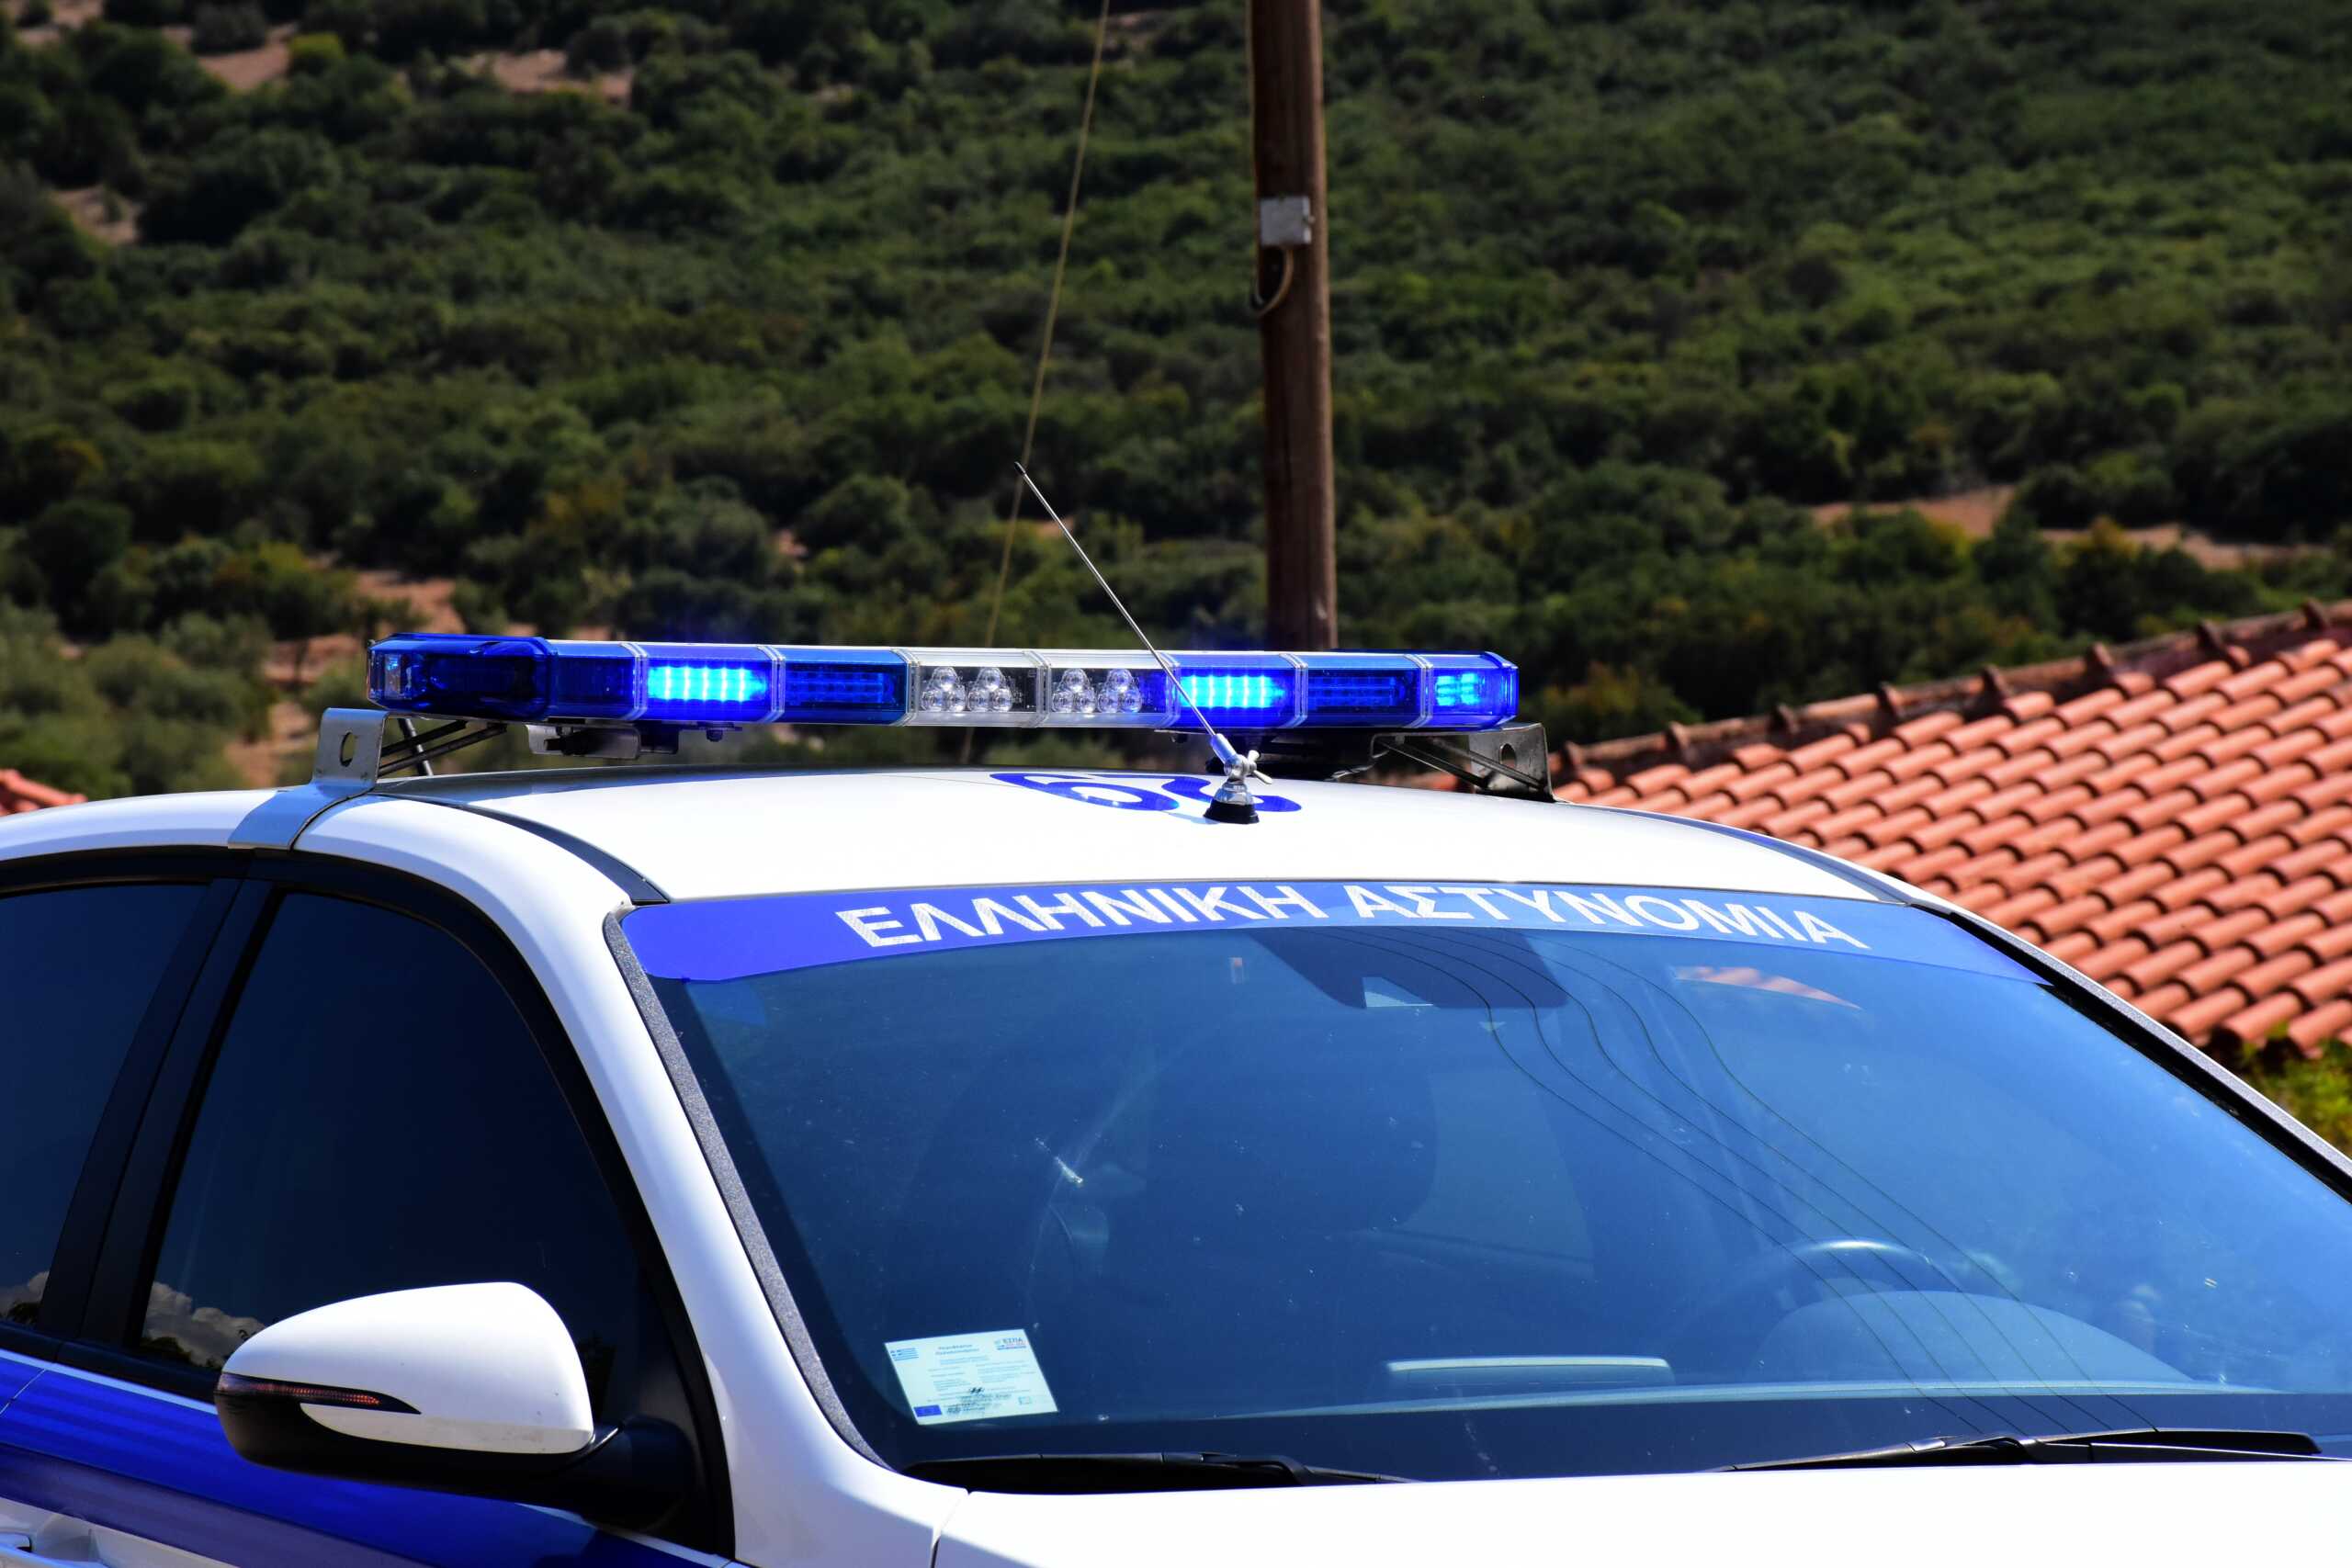 Σπάτα: Κινηματογραφική καταδίωξη αυτοκινήτου με κλεμμένες πινακίδες – Συνελήφθη ένας 15χρονος